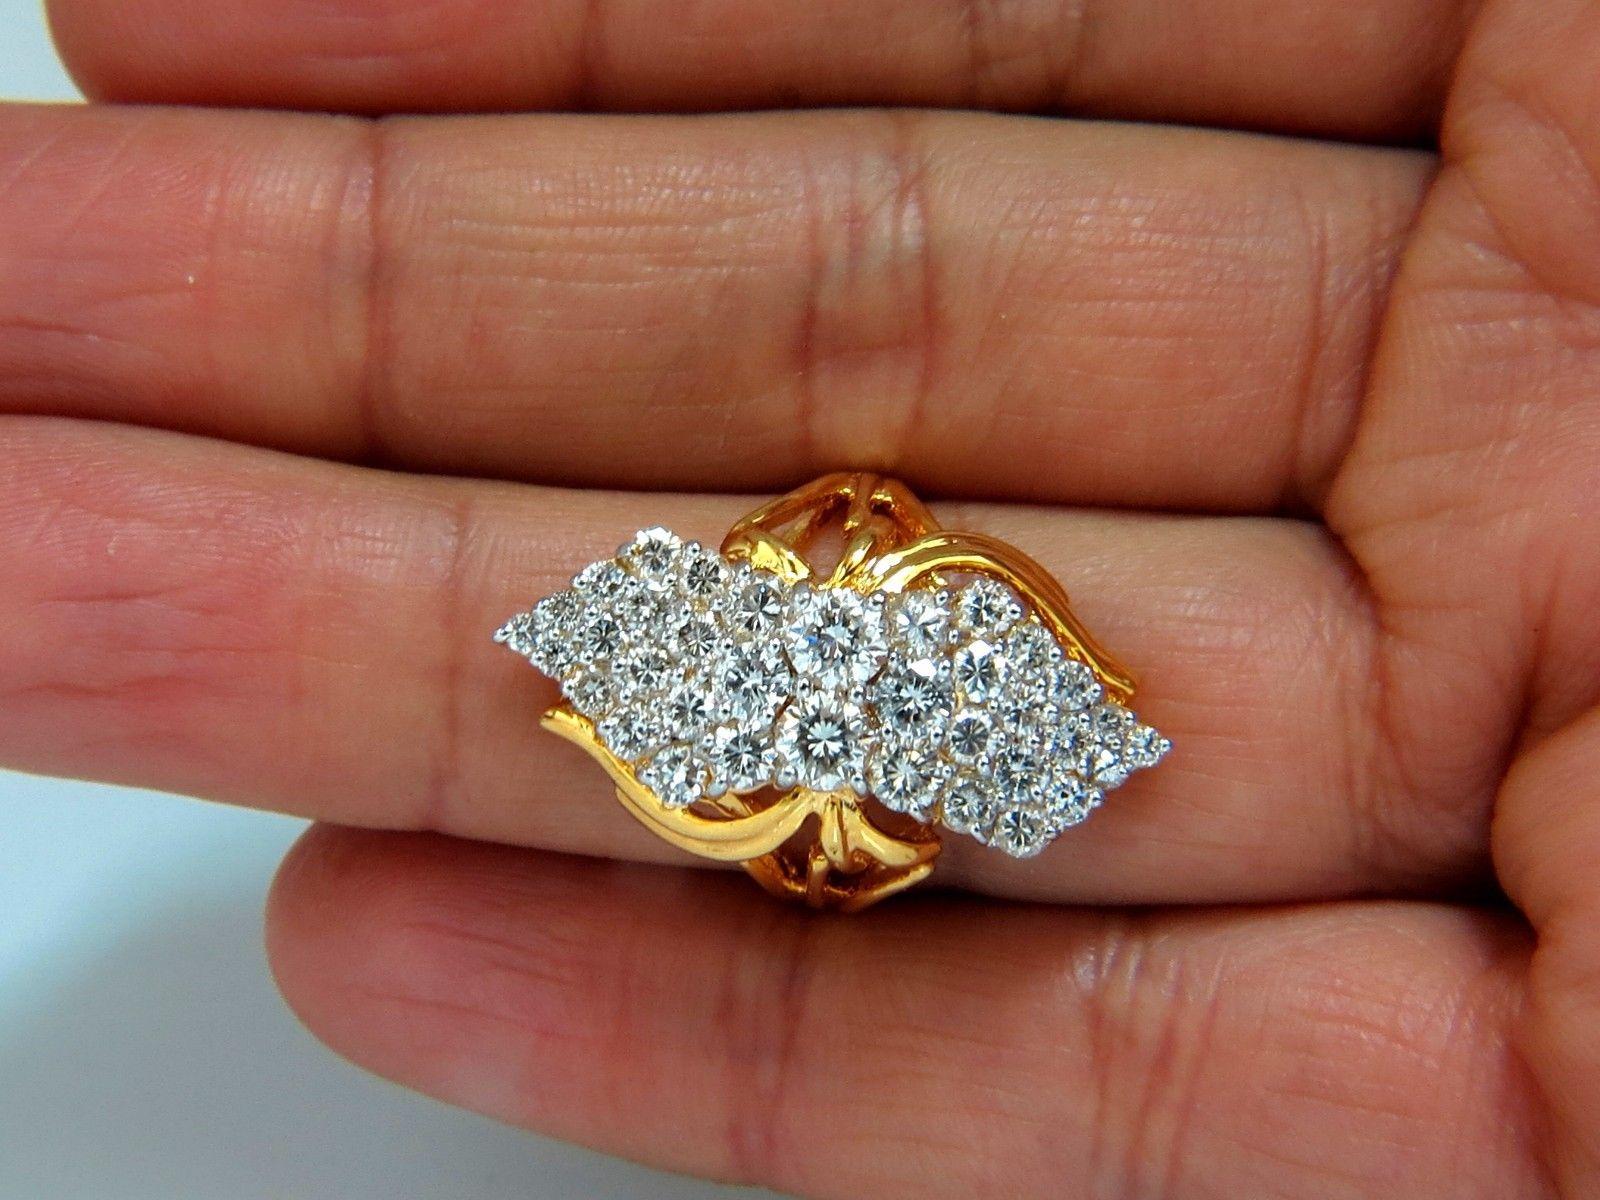 Runder Cluster-Cocktail Prime.

3.50cts Natürliche Diamanten Ring.

Voller Schnitt Brillanten

G-Farbe, Vs-1 Vs-2  klarheit.

14kt. Gelbgold

8.8 Gramm.

aktuelle Ringgröße: 8.25

Kann in der Größe geändert werden, bitte anfragen. 

Deck des Rings: